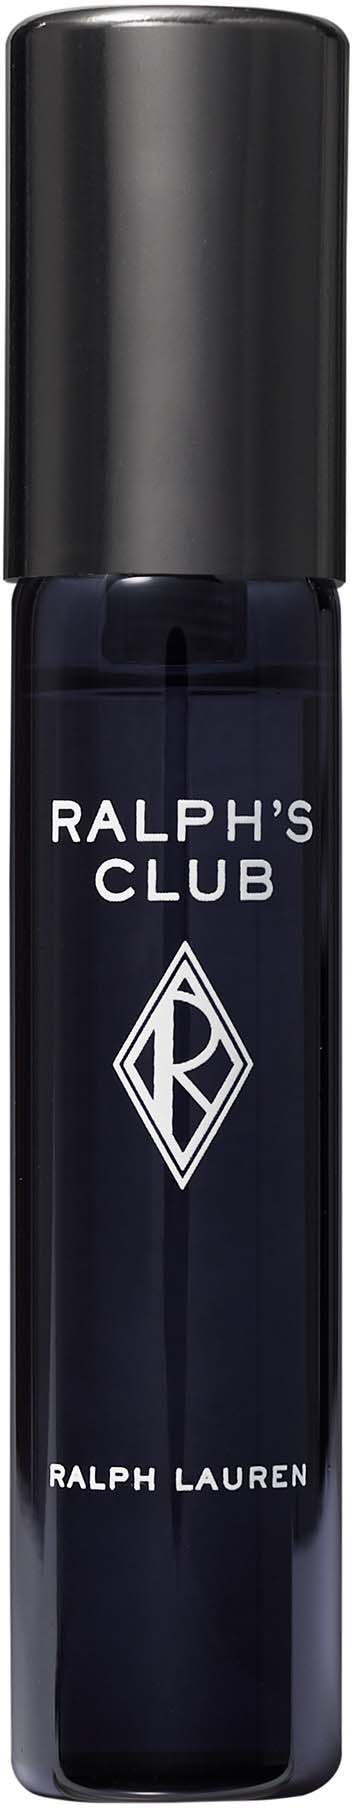 Ralph Lauren Ralph's Club Eau de Parfum 10 ml 